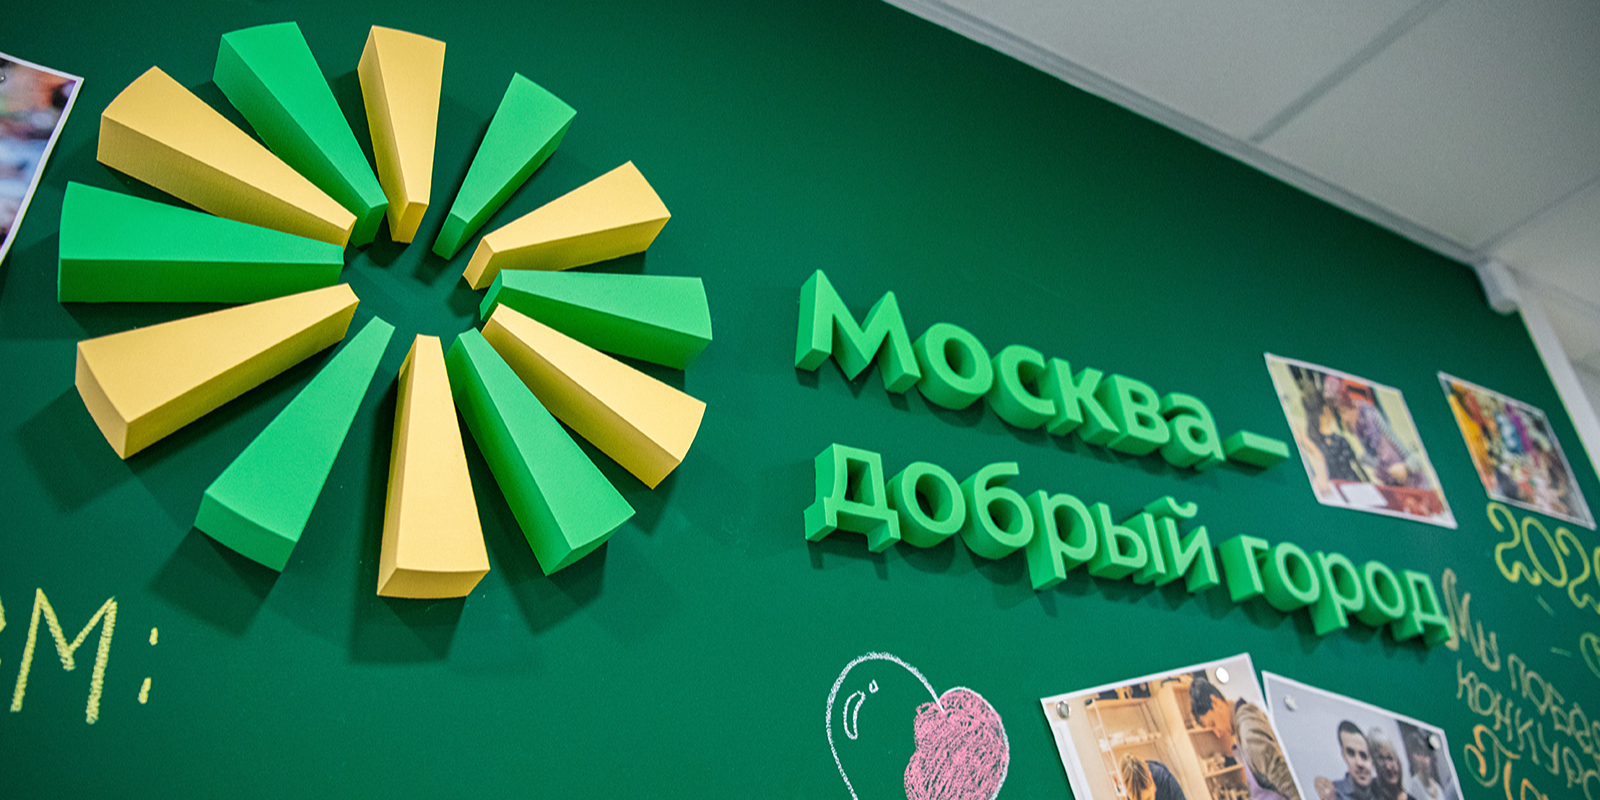 Ракова: На конкурс грантов «Москва — добрый город» подано почти 500 заявок от НКО